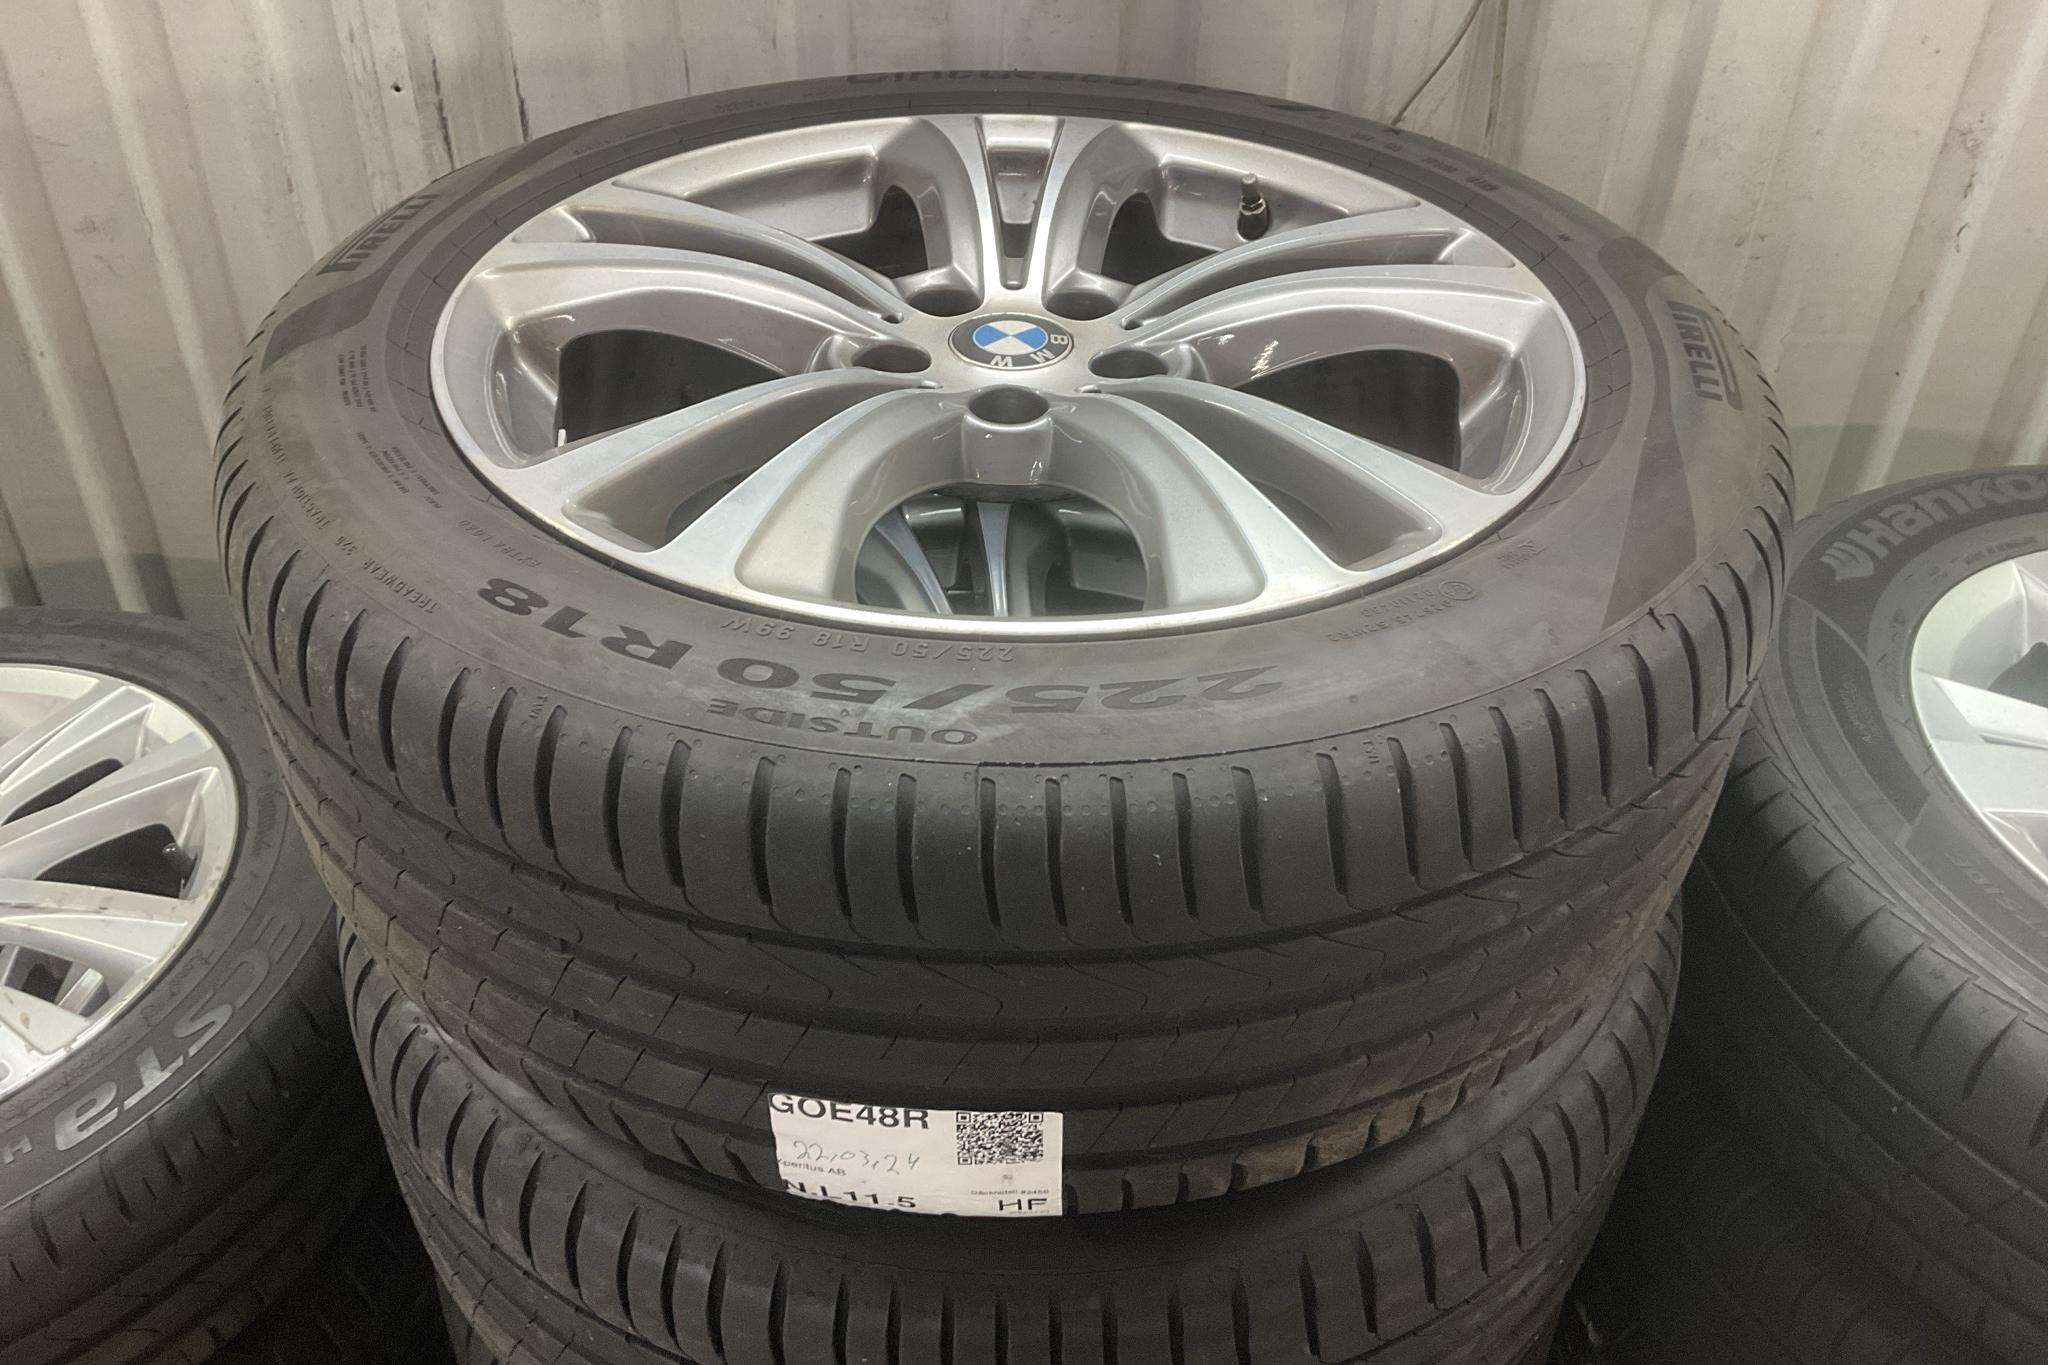 BMW X1 xDrive20d, F48 (190hk) - 100 440 km - Automatic - white - 2019